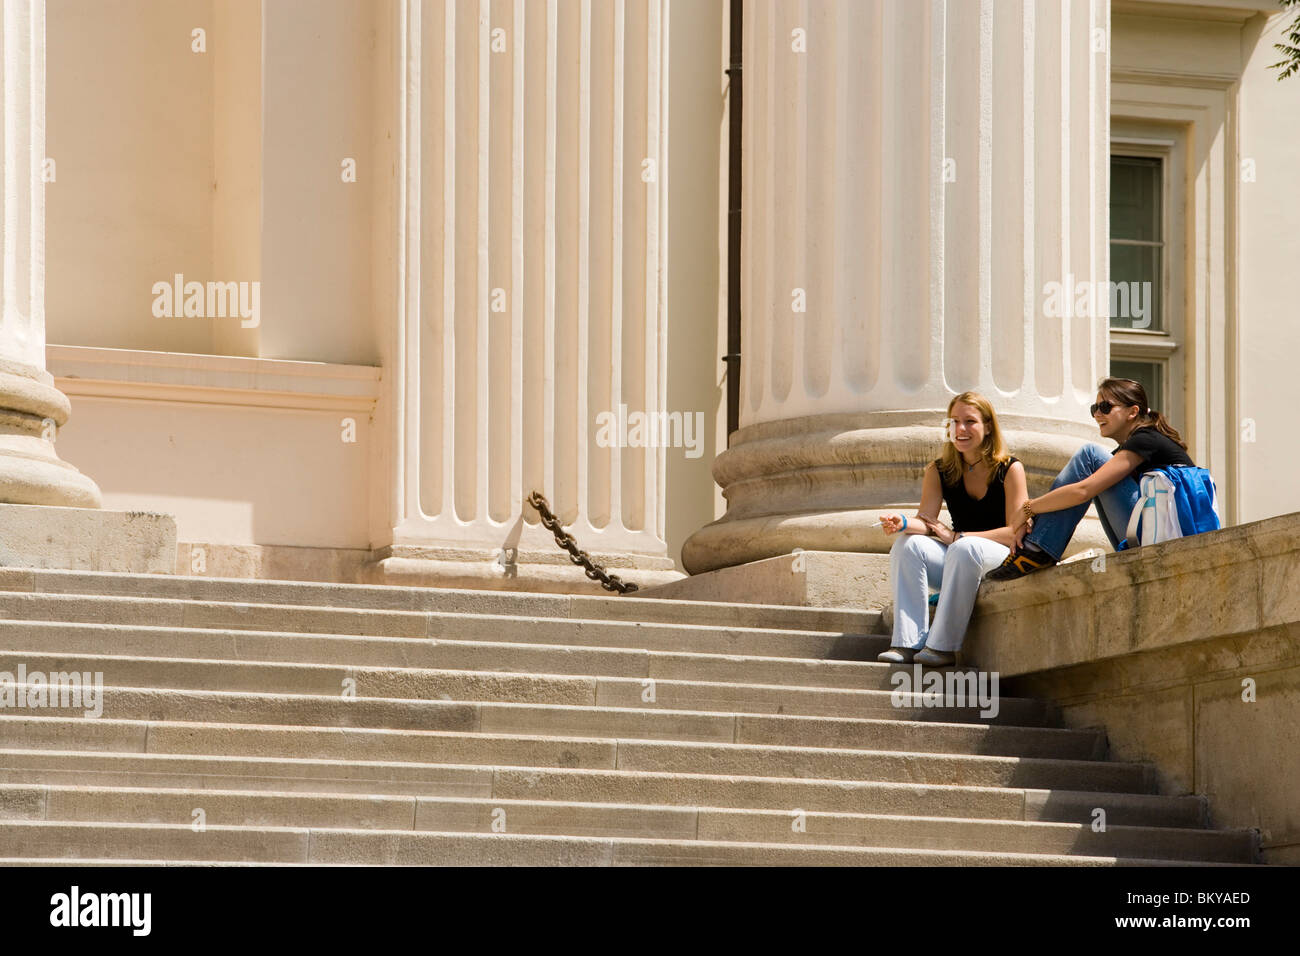 Frau auf der Treppe des ungarischen Nationalmuseums, zwei junge Frauen sitzen auf der Treppe der ungarischen Nationalmuseum, Pest, Bu Stockfoto